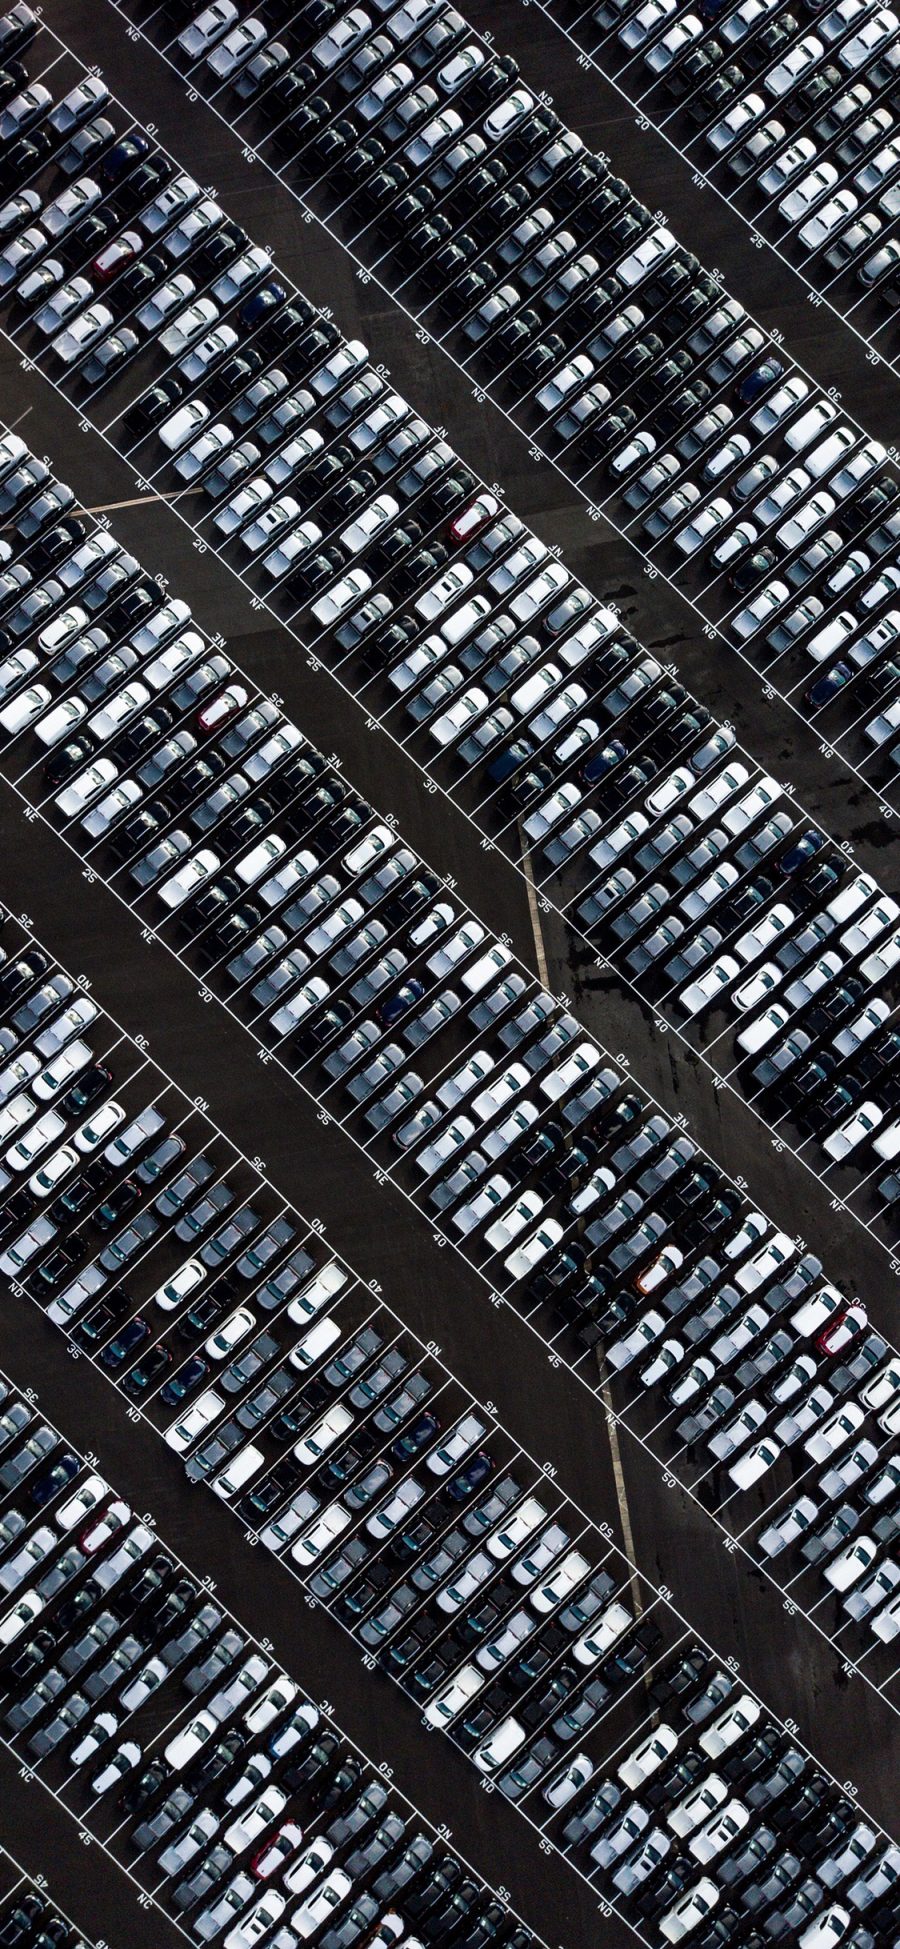 [2436×1125]停车场 汽车 停泊 排列 密集 苹果手机壁纸图片